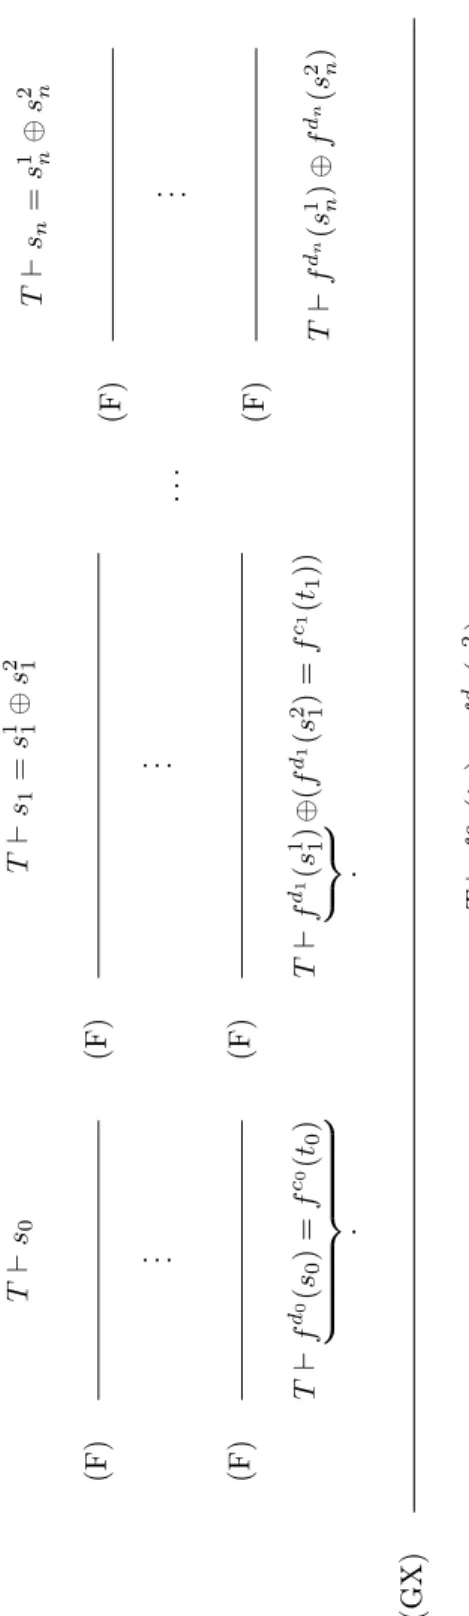 Figure 5.6: Illustration of Lemma 22